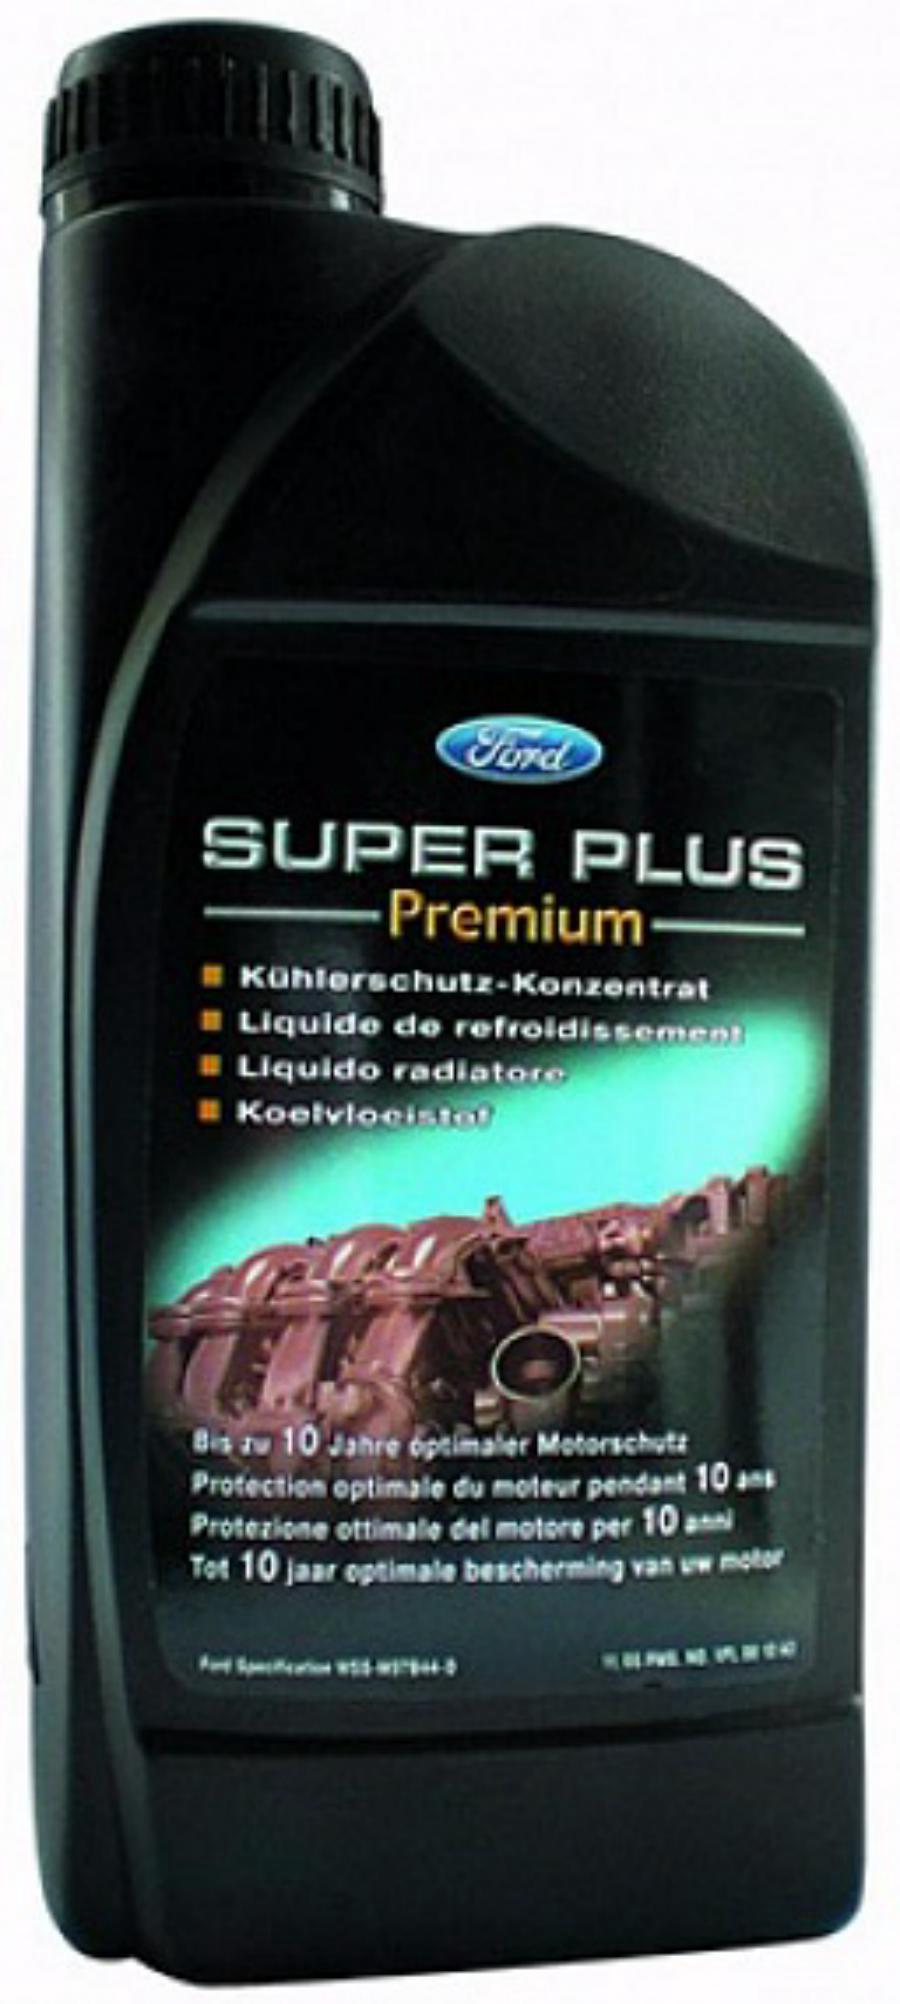 Антифриз Ford 1890260 Super Plus Premium Llc, 1 л